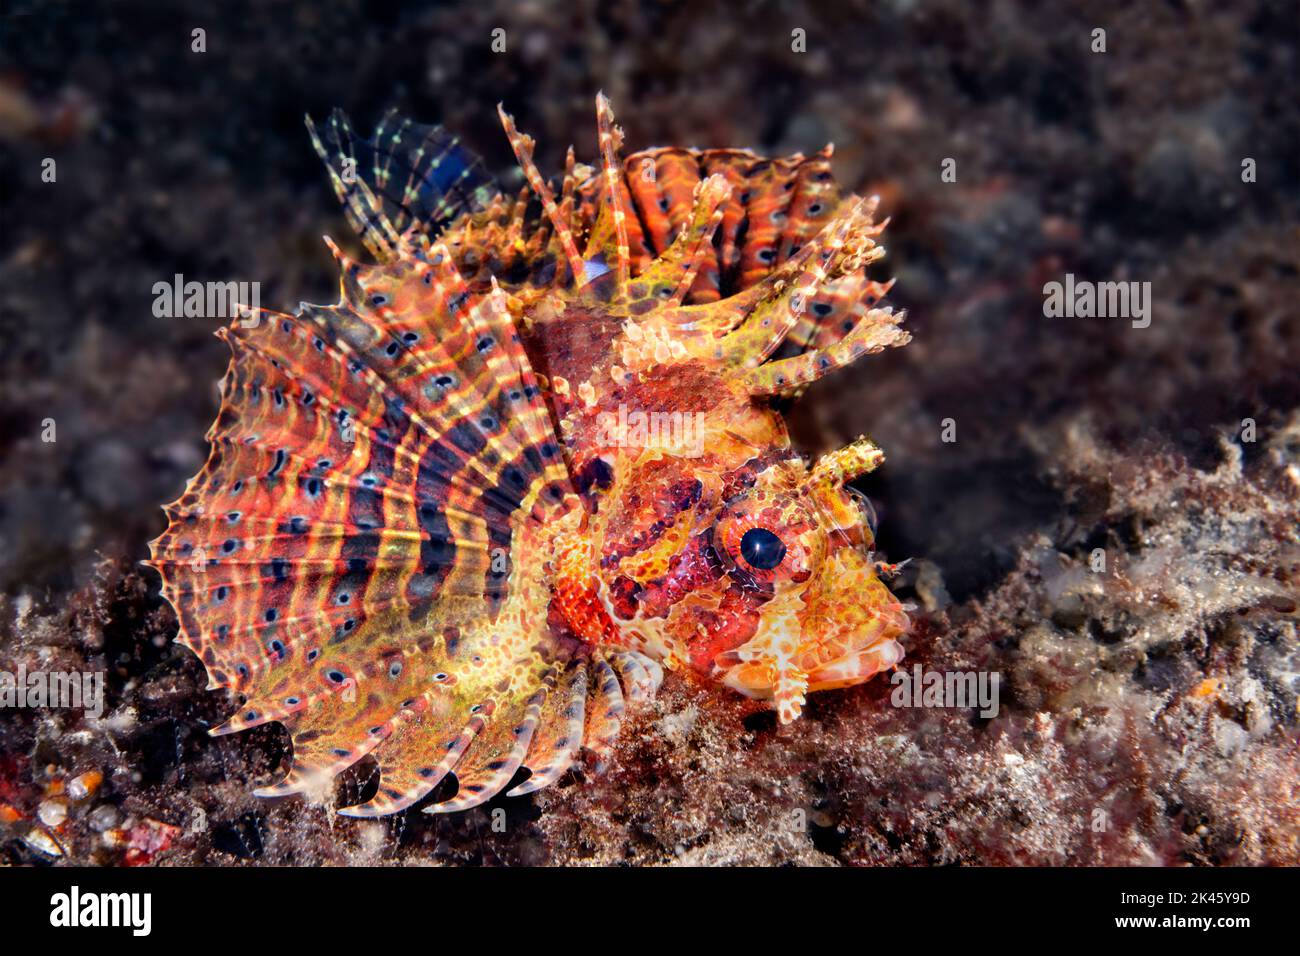 Primo piano di uno splendido pesce tacchino con le sue pinne estese che mostrano i suoi meravigliosi colori mentre nuota su una barriera corallina tropicale. Foto Stock